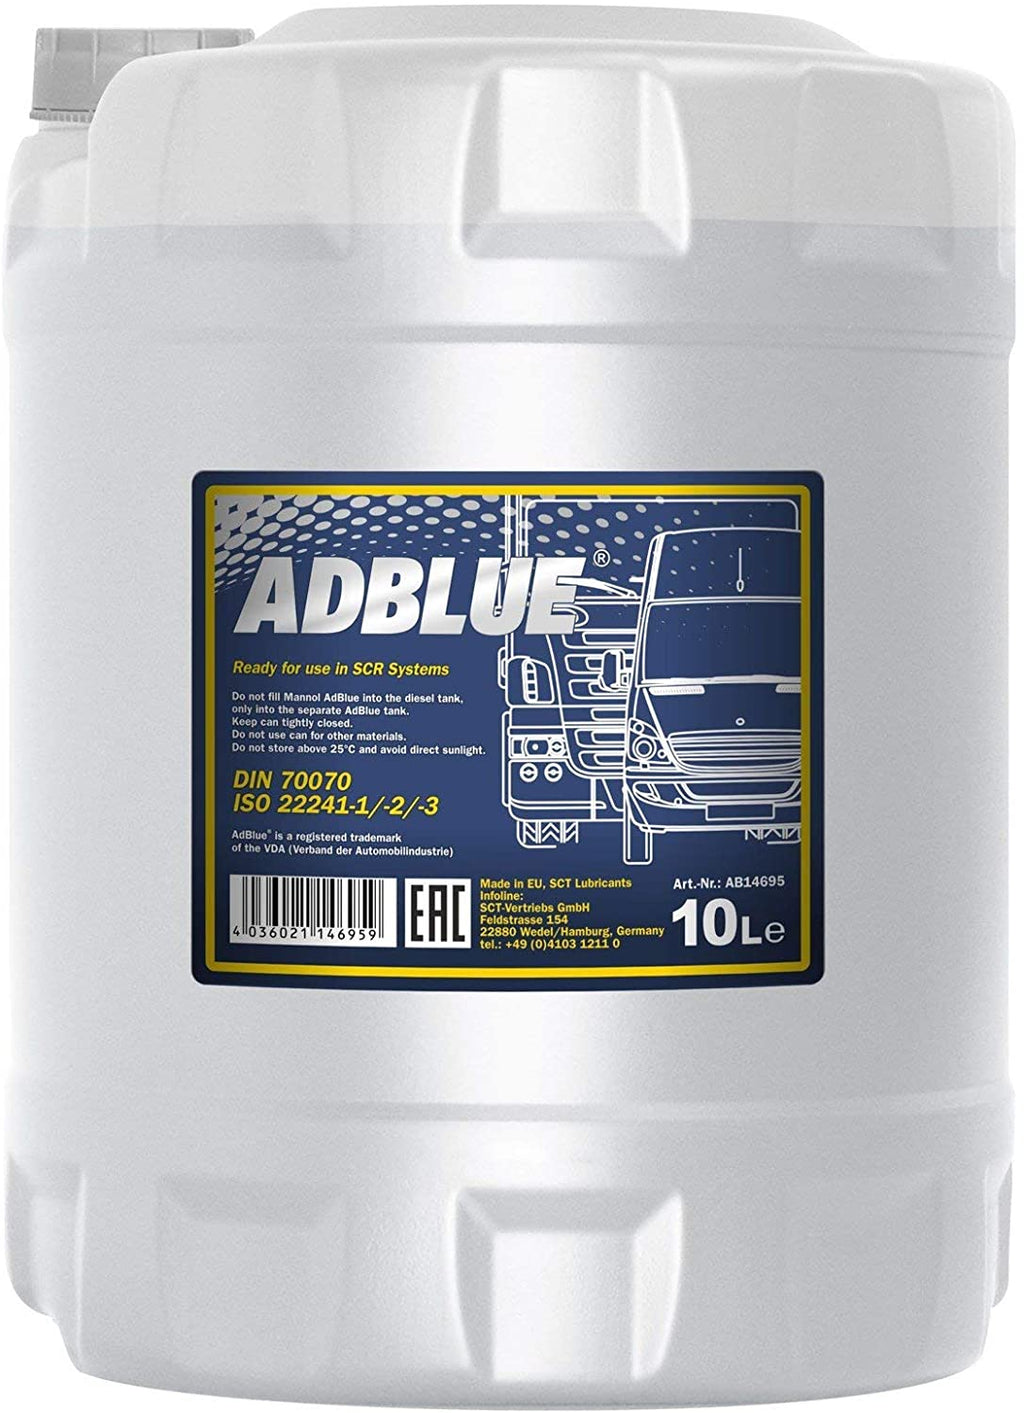 Mannol AD Blue 20 Liter